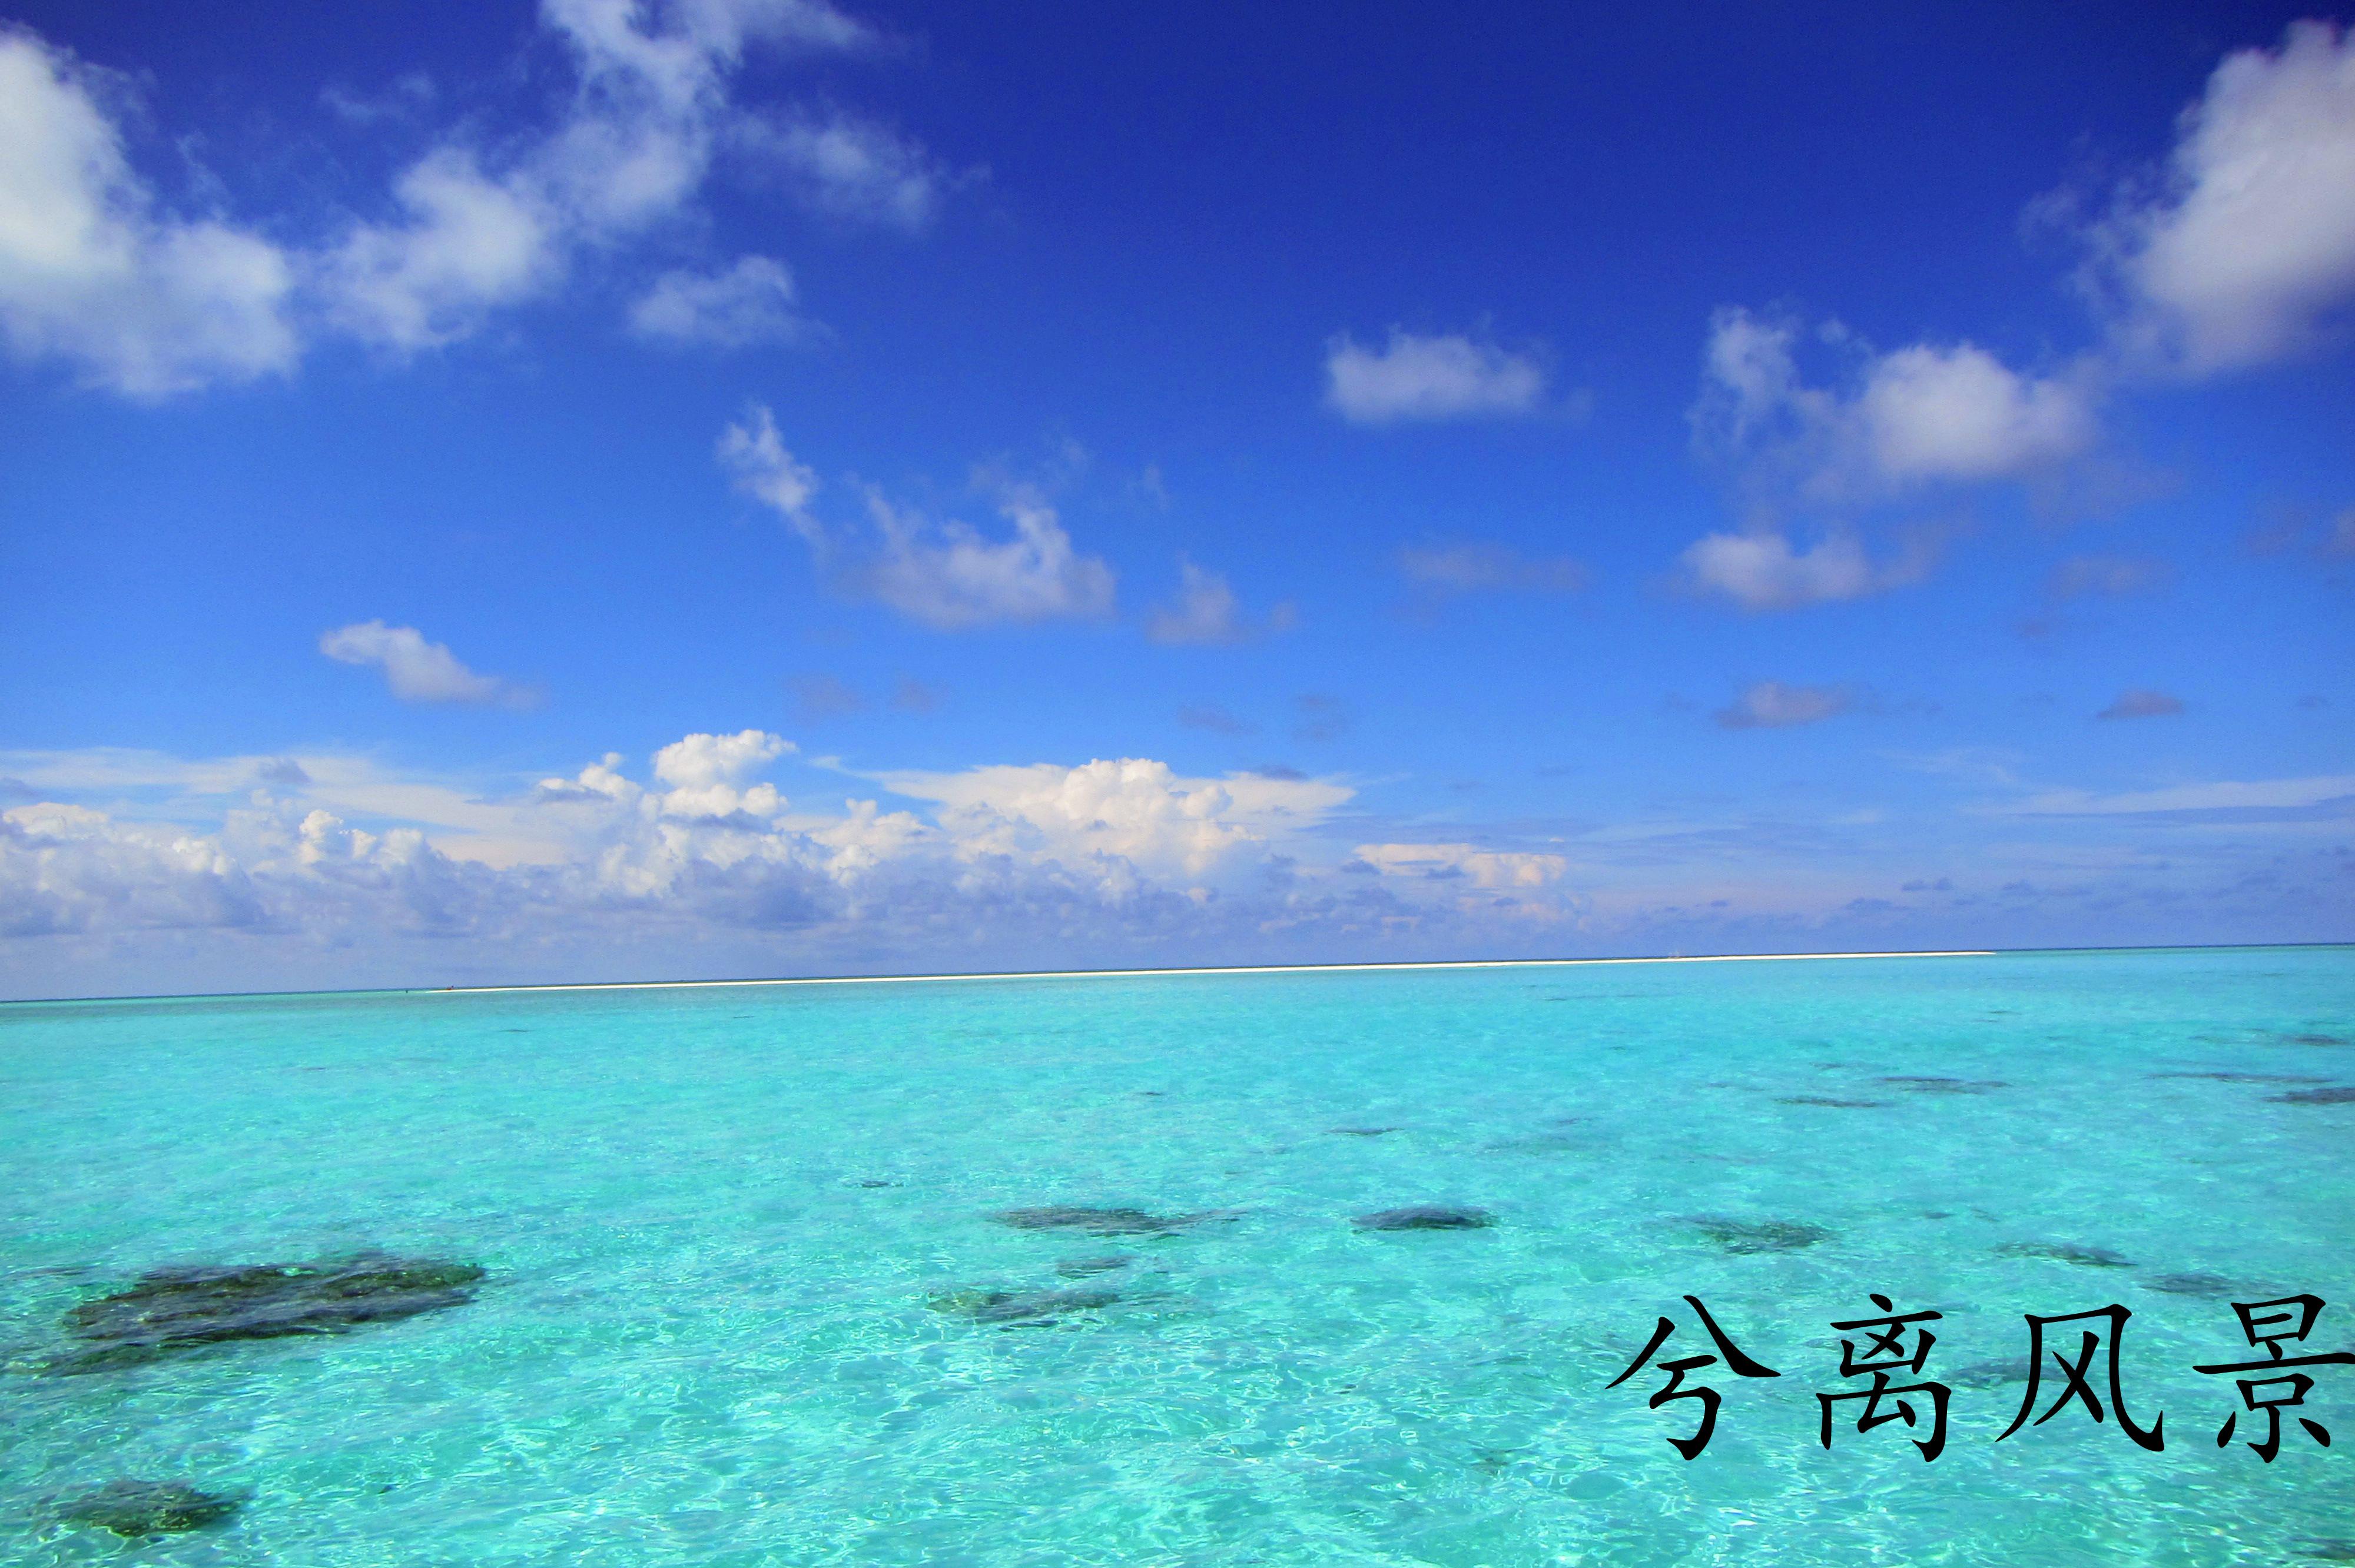 10 Best Things to do in Xisha Islands, Sansha - Xisha Islands travel ...